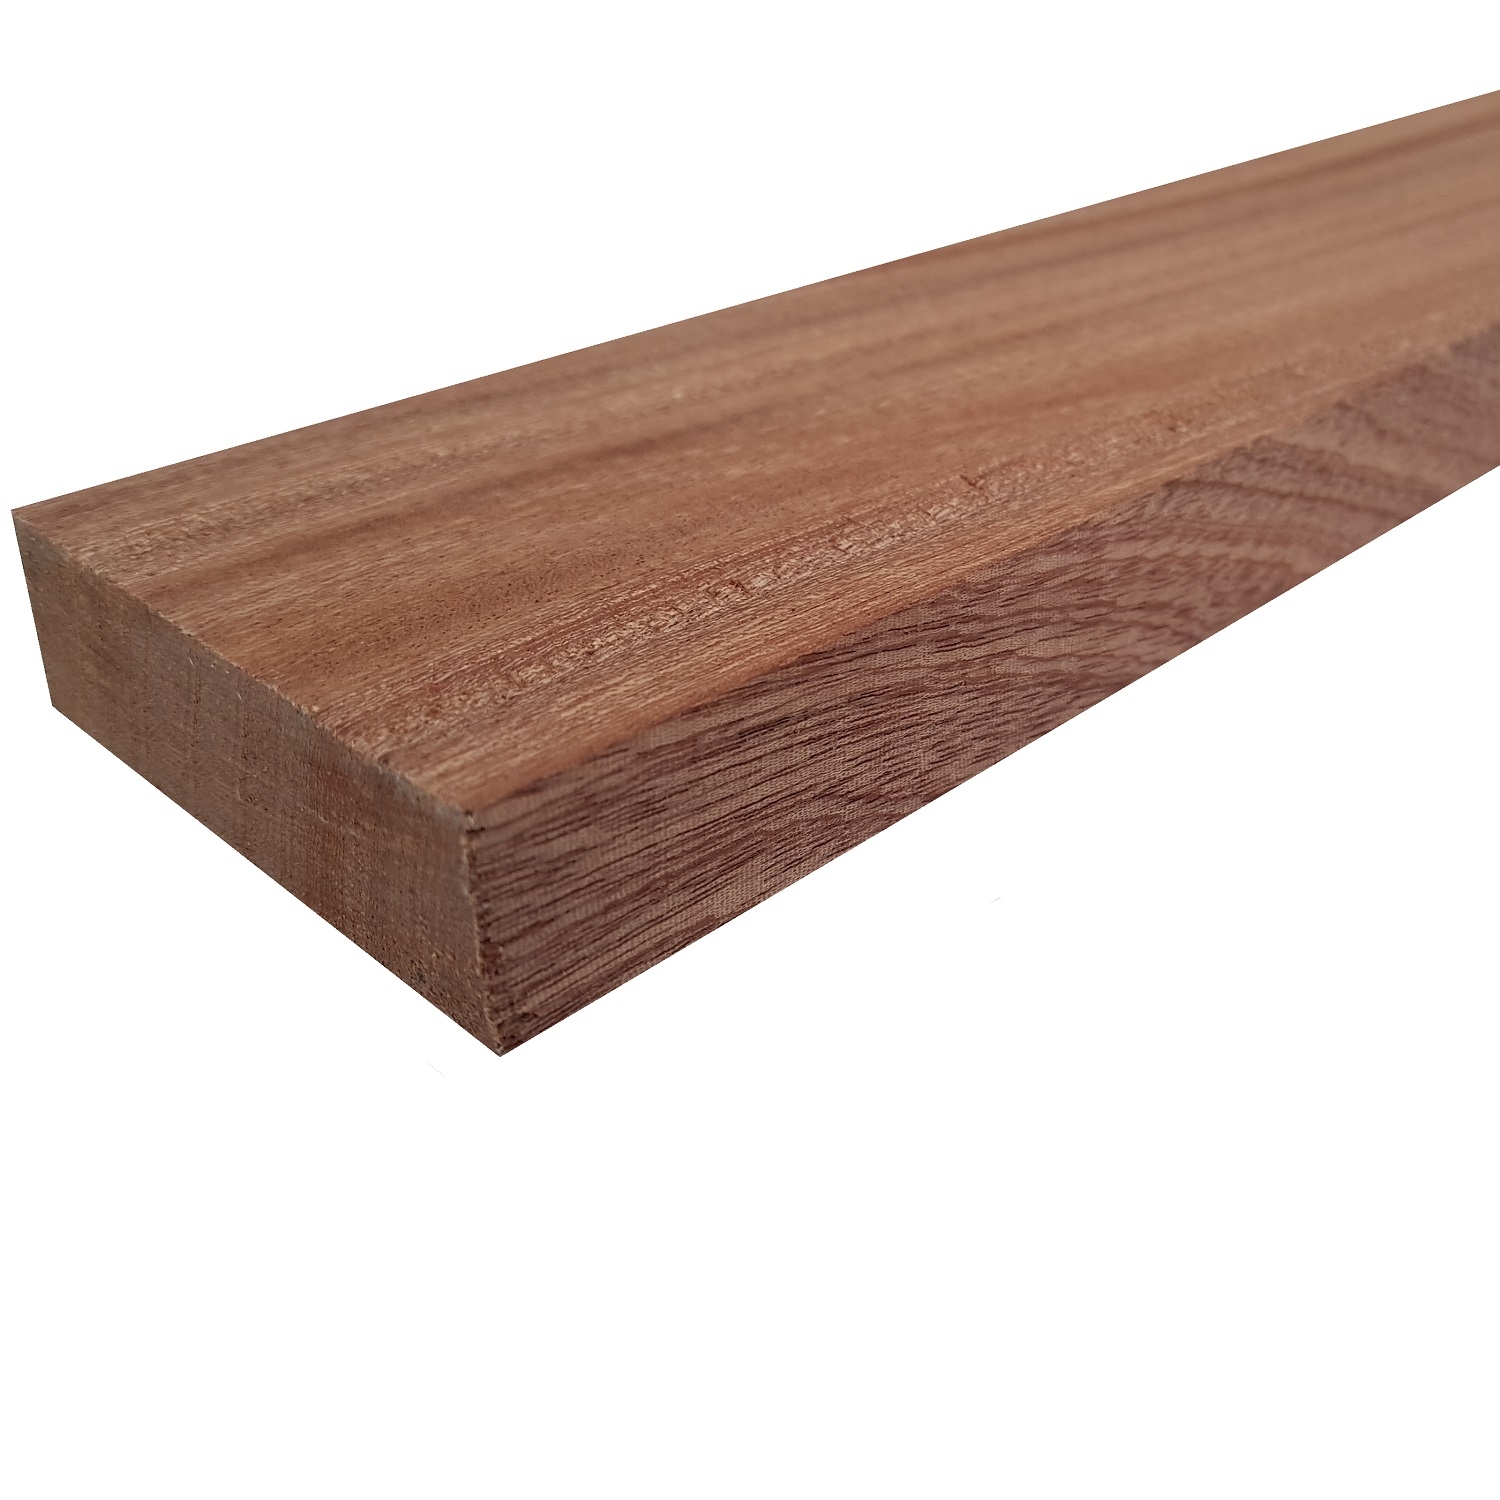 Tavola legno di Mogano Refilato Piallato mm 21 x 110 x 1500